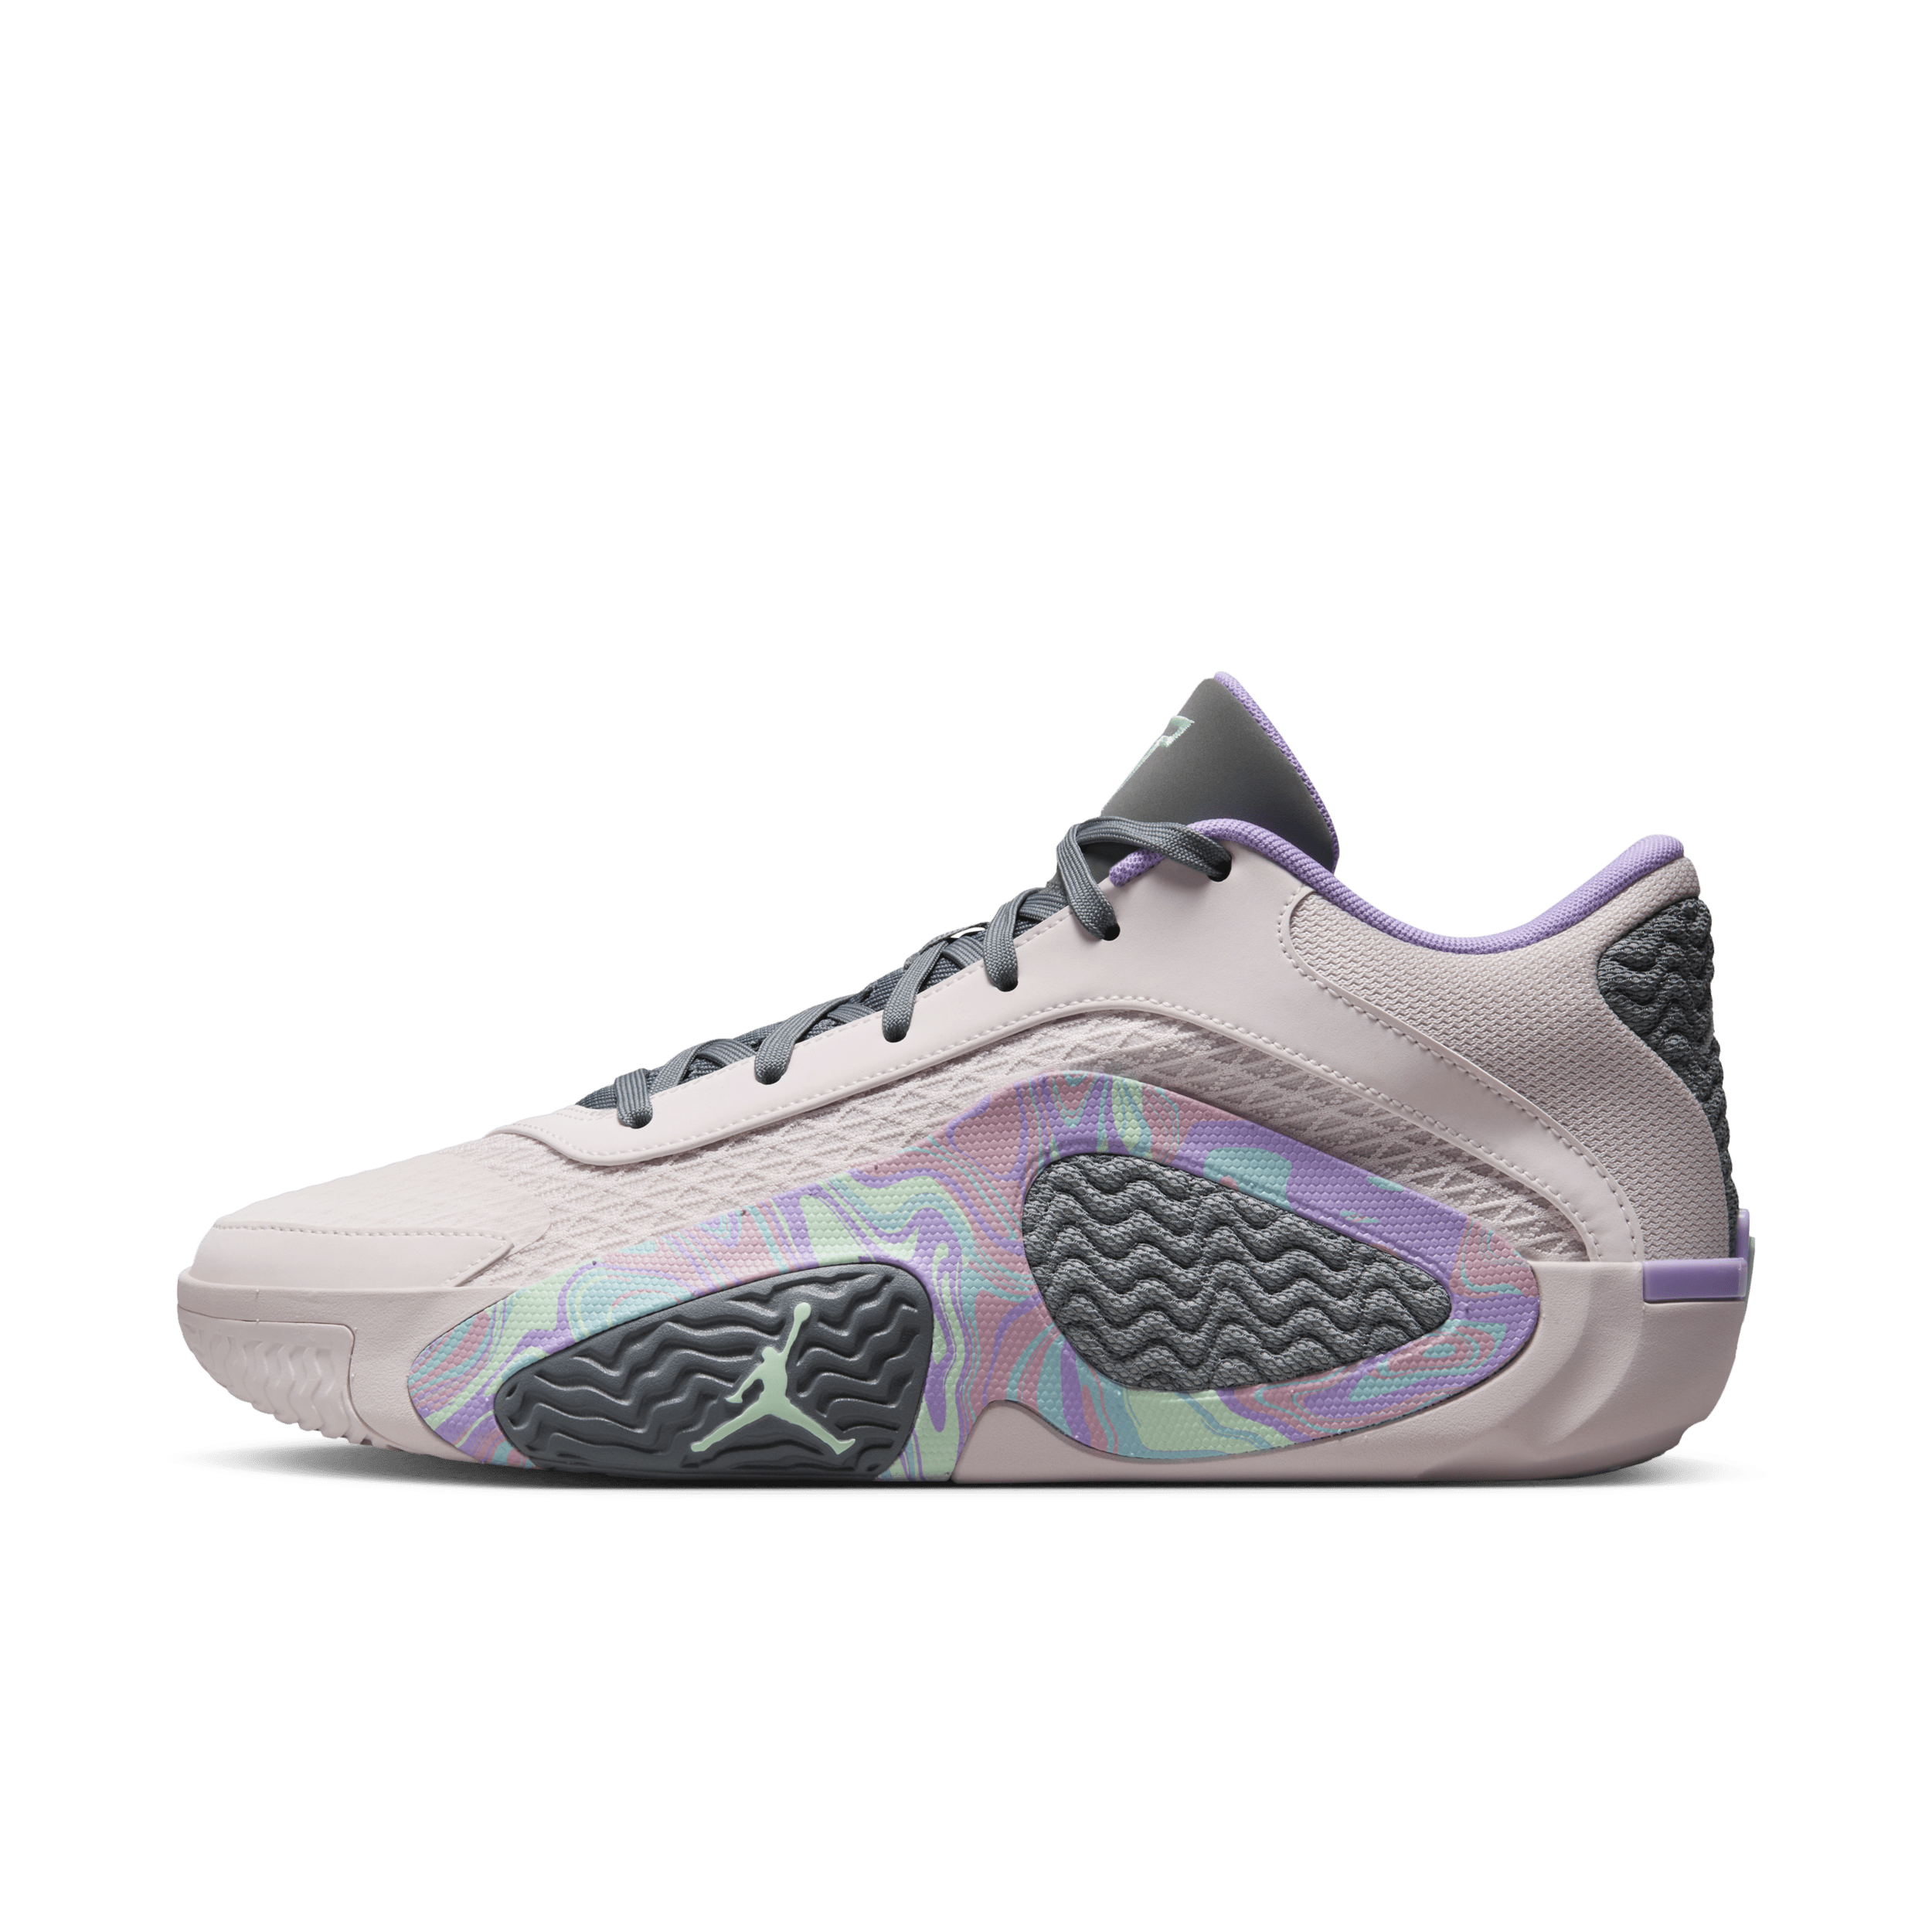 Nike Tatum 2 'Sidewalk Chalk' basketbalschoenen - Roze